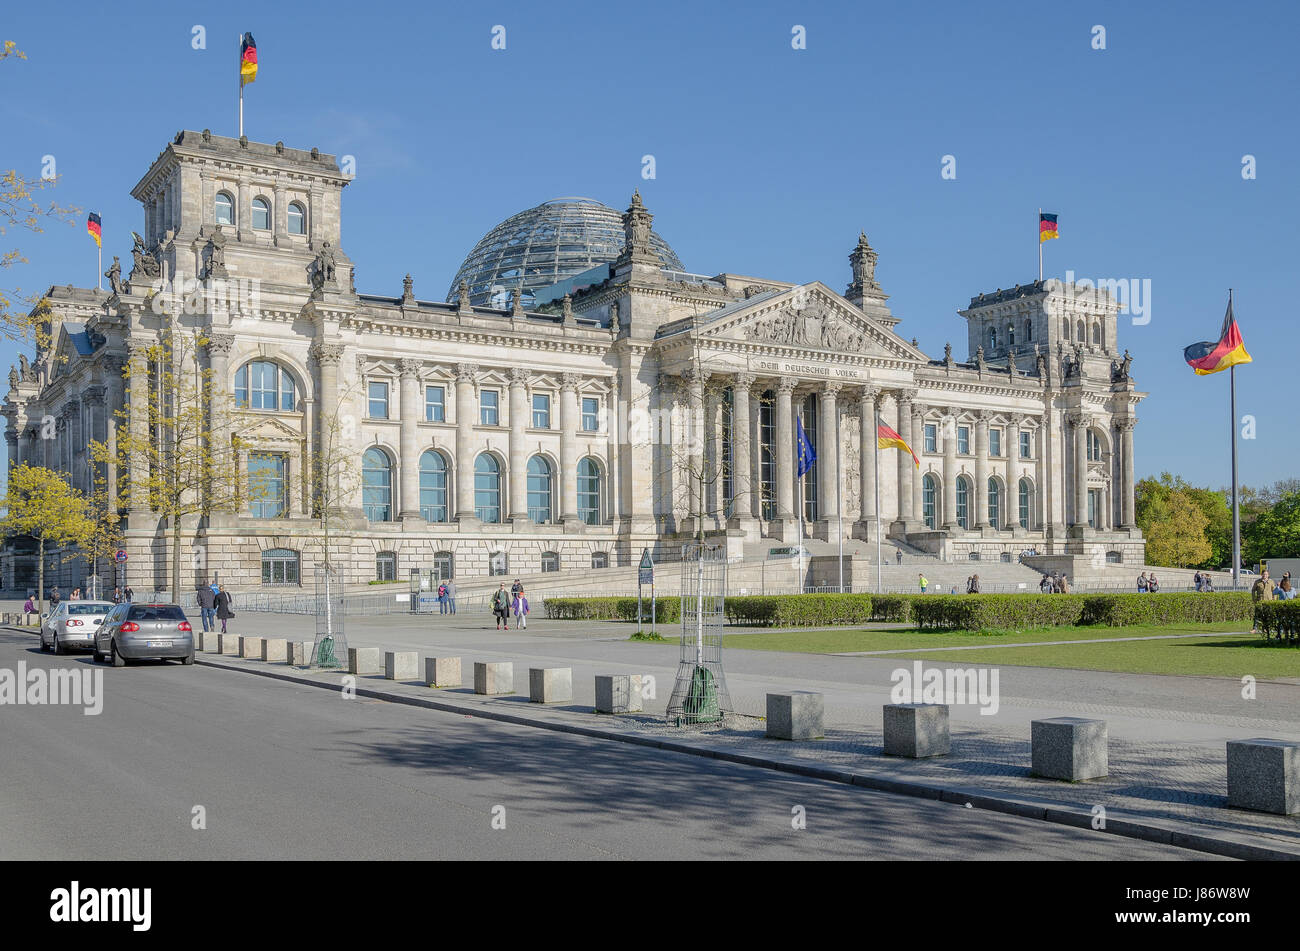 Das Reichstagsgebäude mit der berühmten Glaskuppel ist eines der meistbesuchten Sehenswürdigkeiten in Berlin. Es ist Sitz des Deutschen Bundestages. Stockfoto